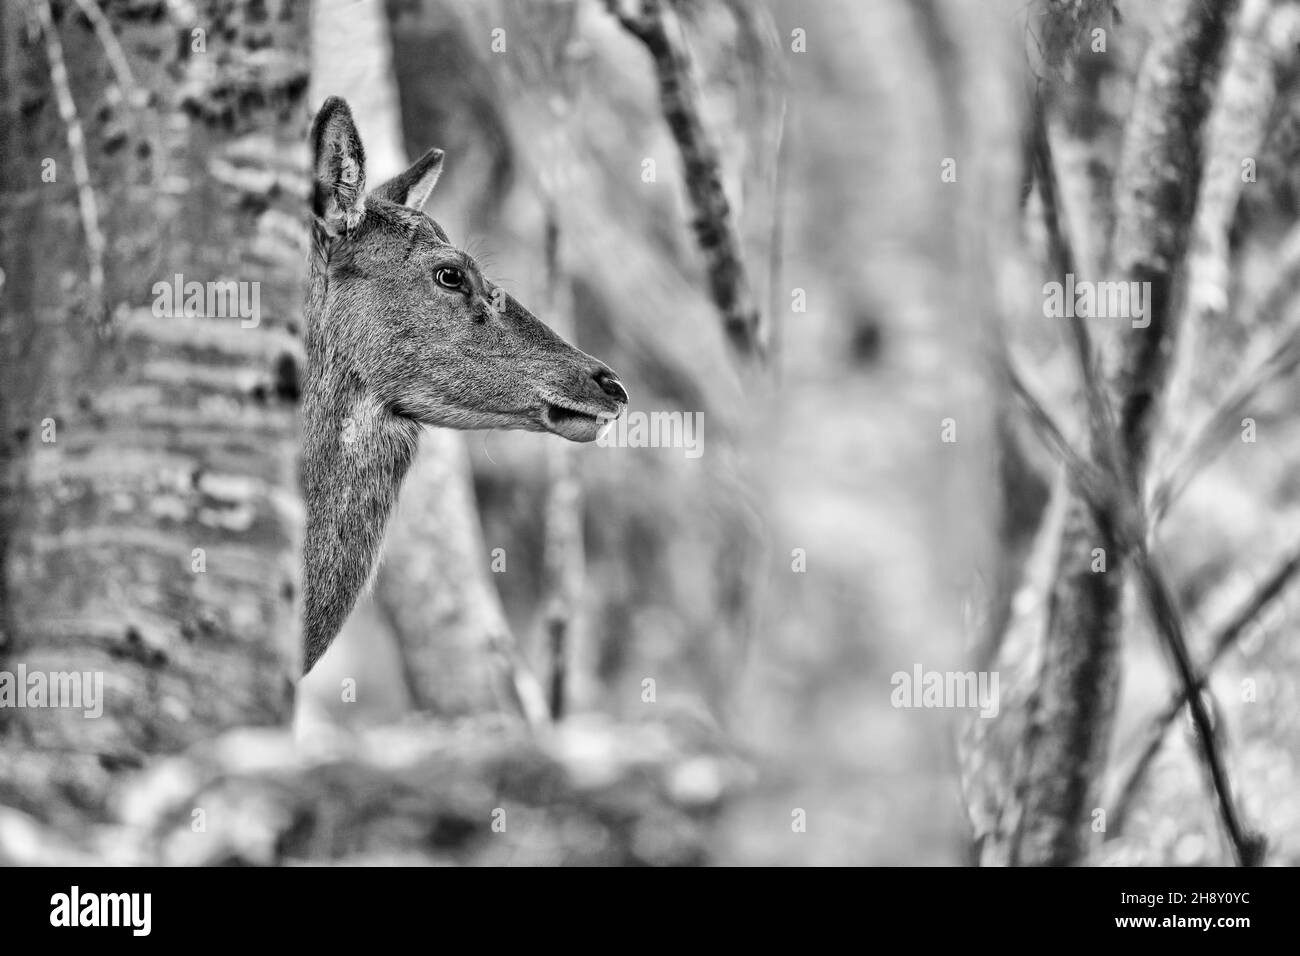 Deer female in the wild, black and white portrait (Cervus elaphus) Stock Photo